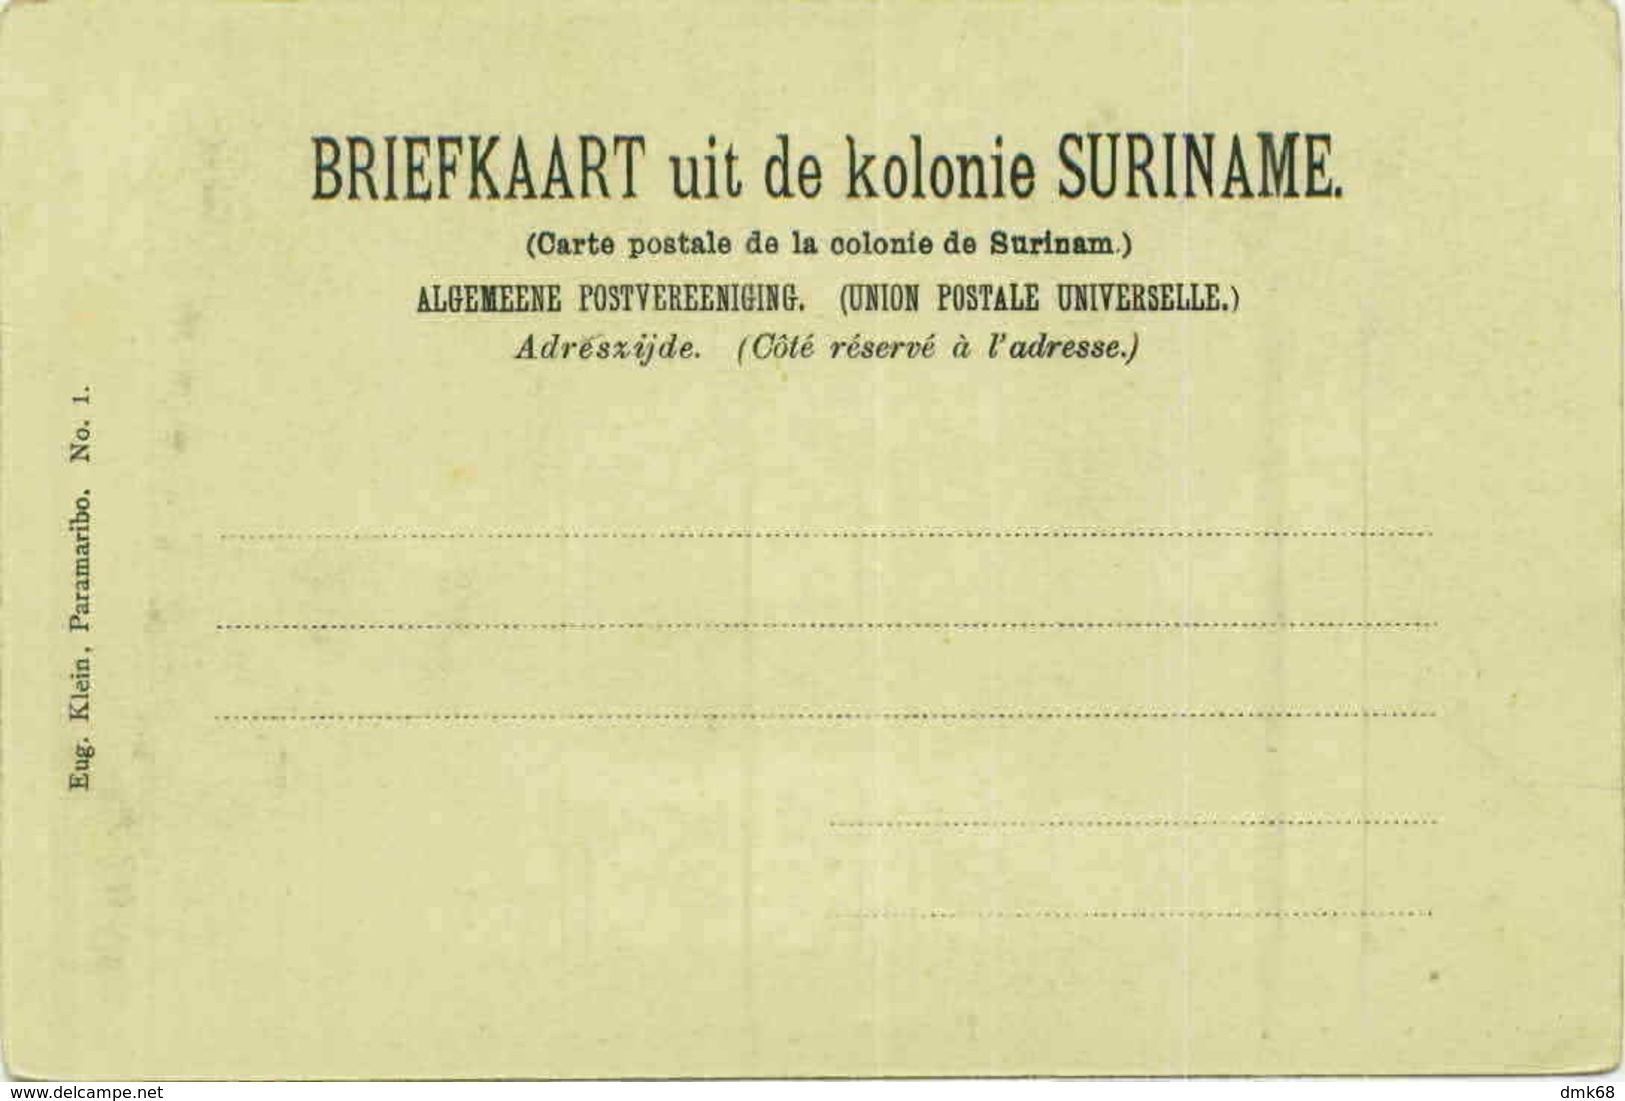 SURINAME - PARAMARIBO - HEERENSTRAAT - EDIT EUG. KLEIN - 1900s (BG4833) - Suriname